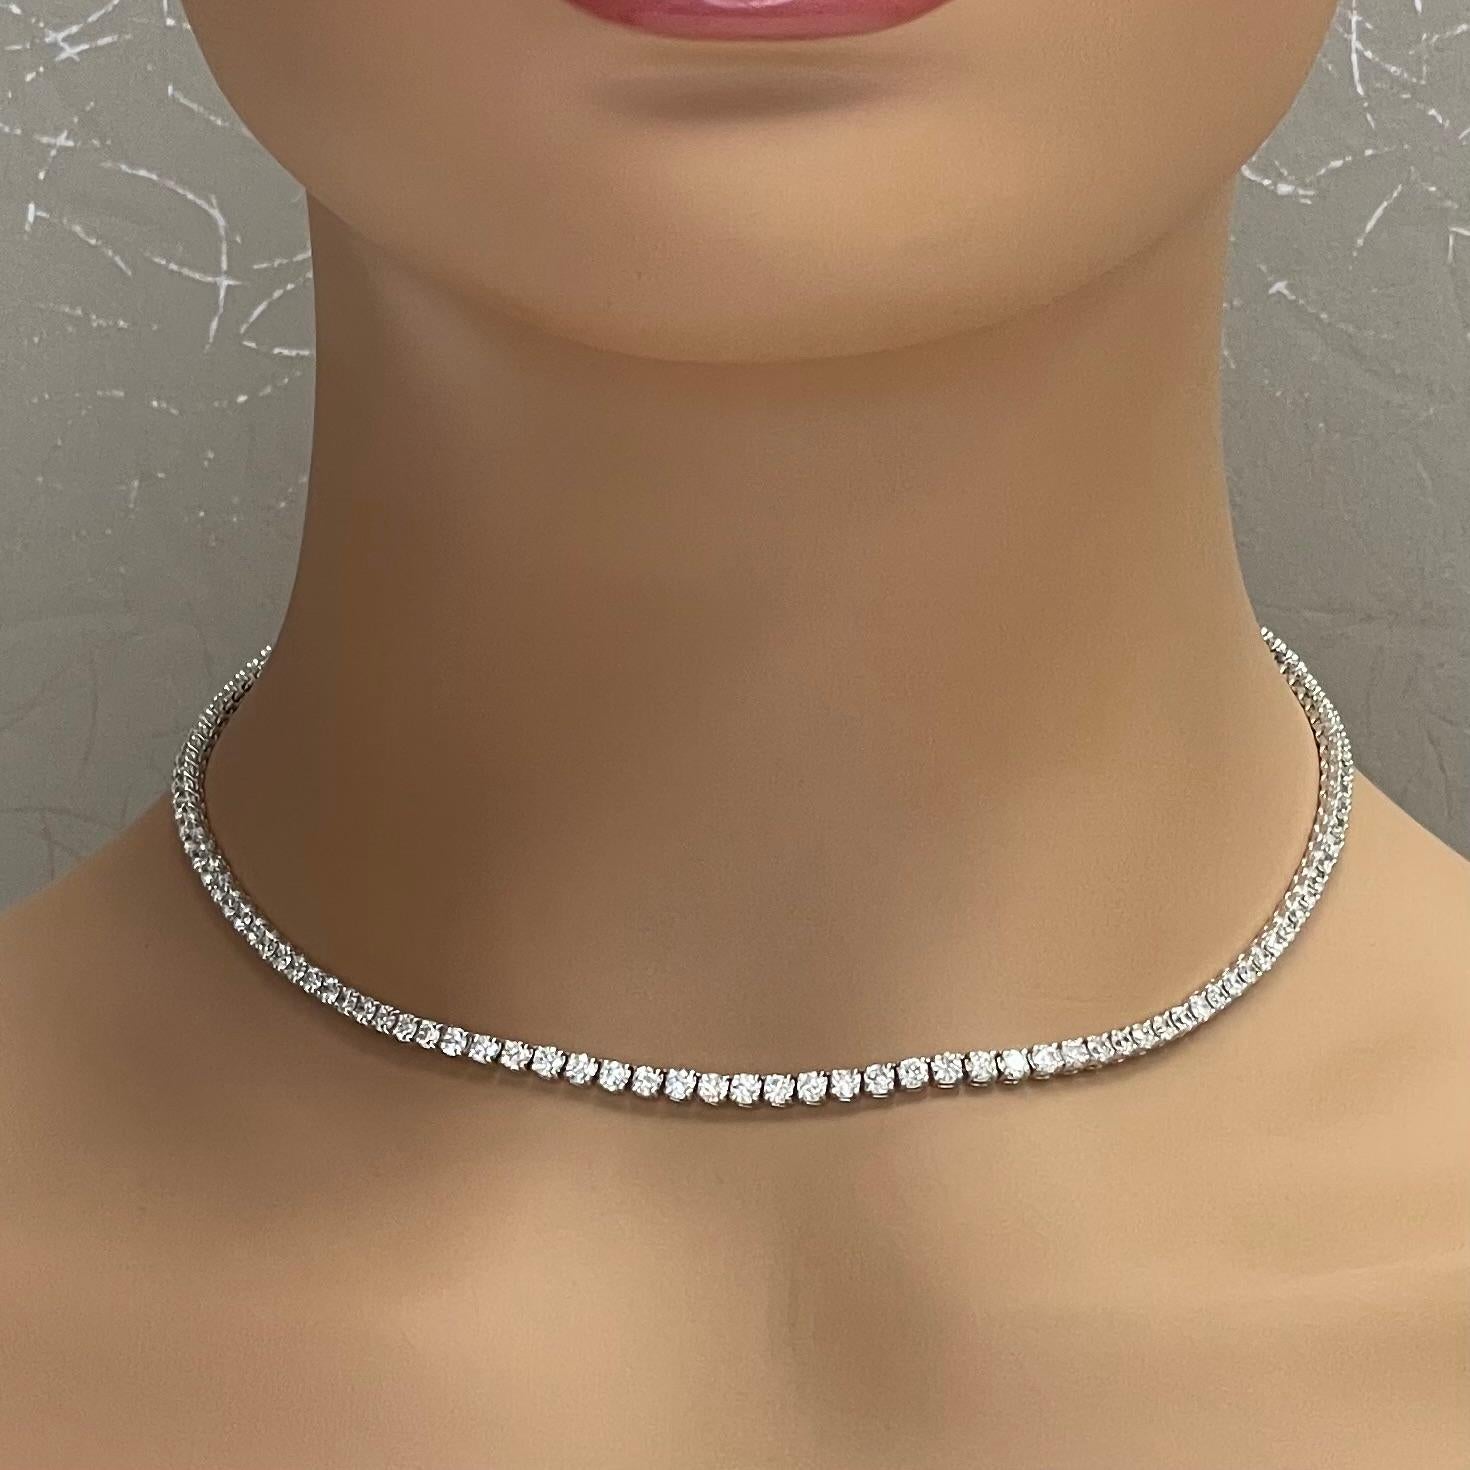 vvs necklace